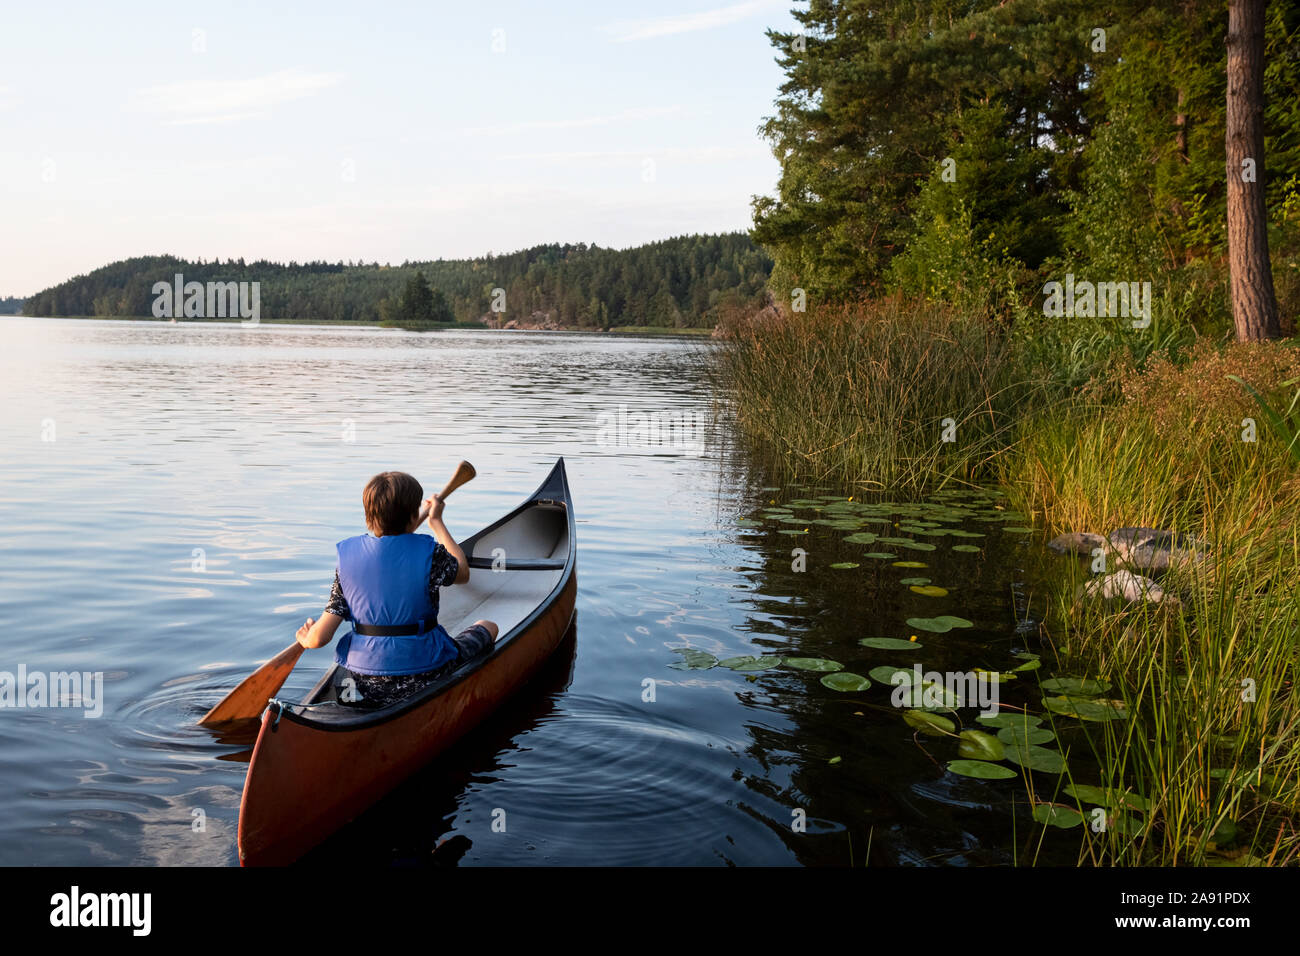 Boy kayaking Stock Photo